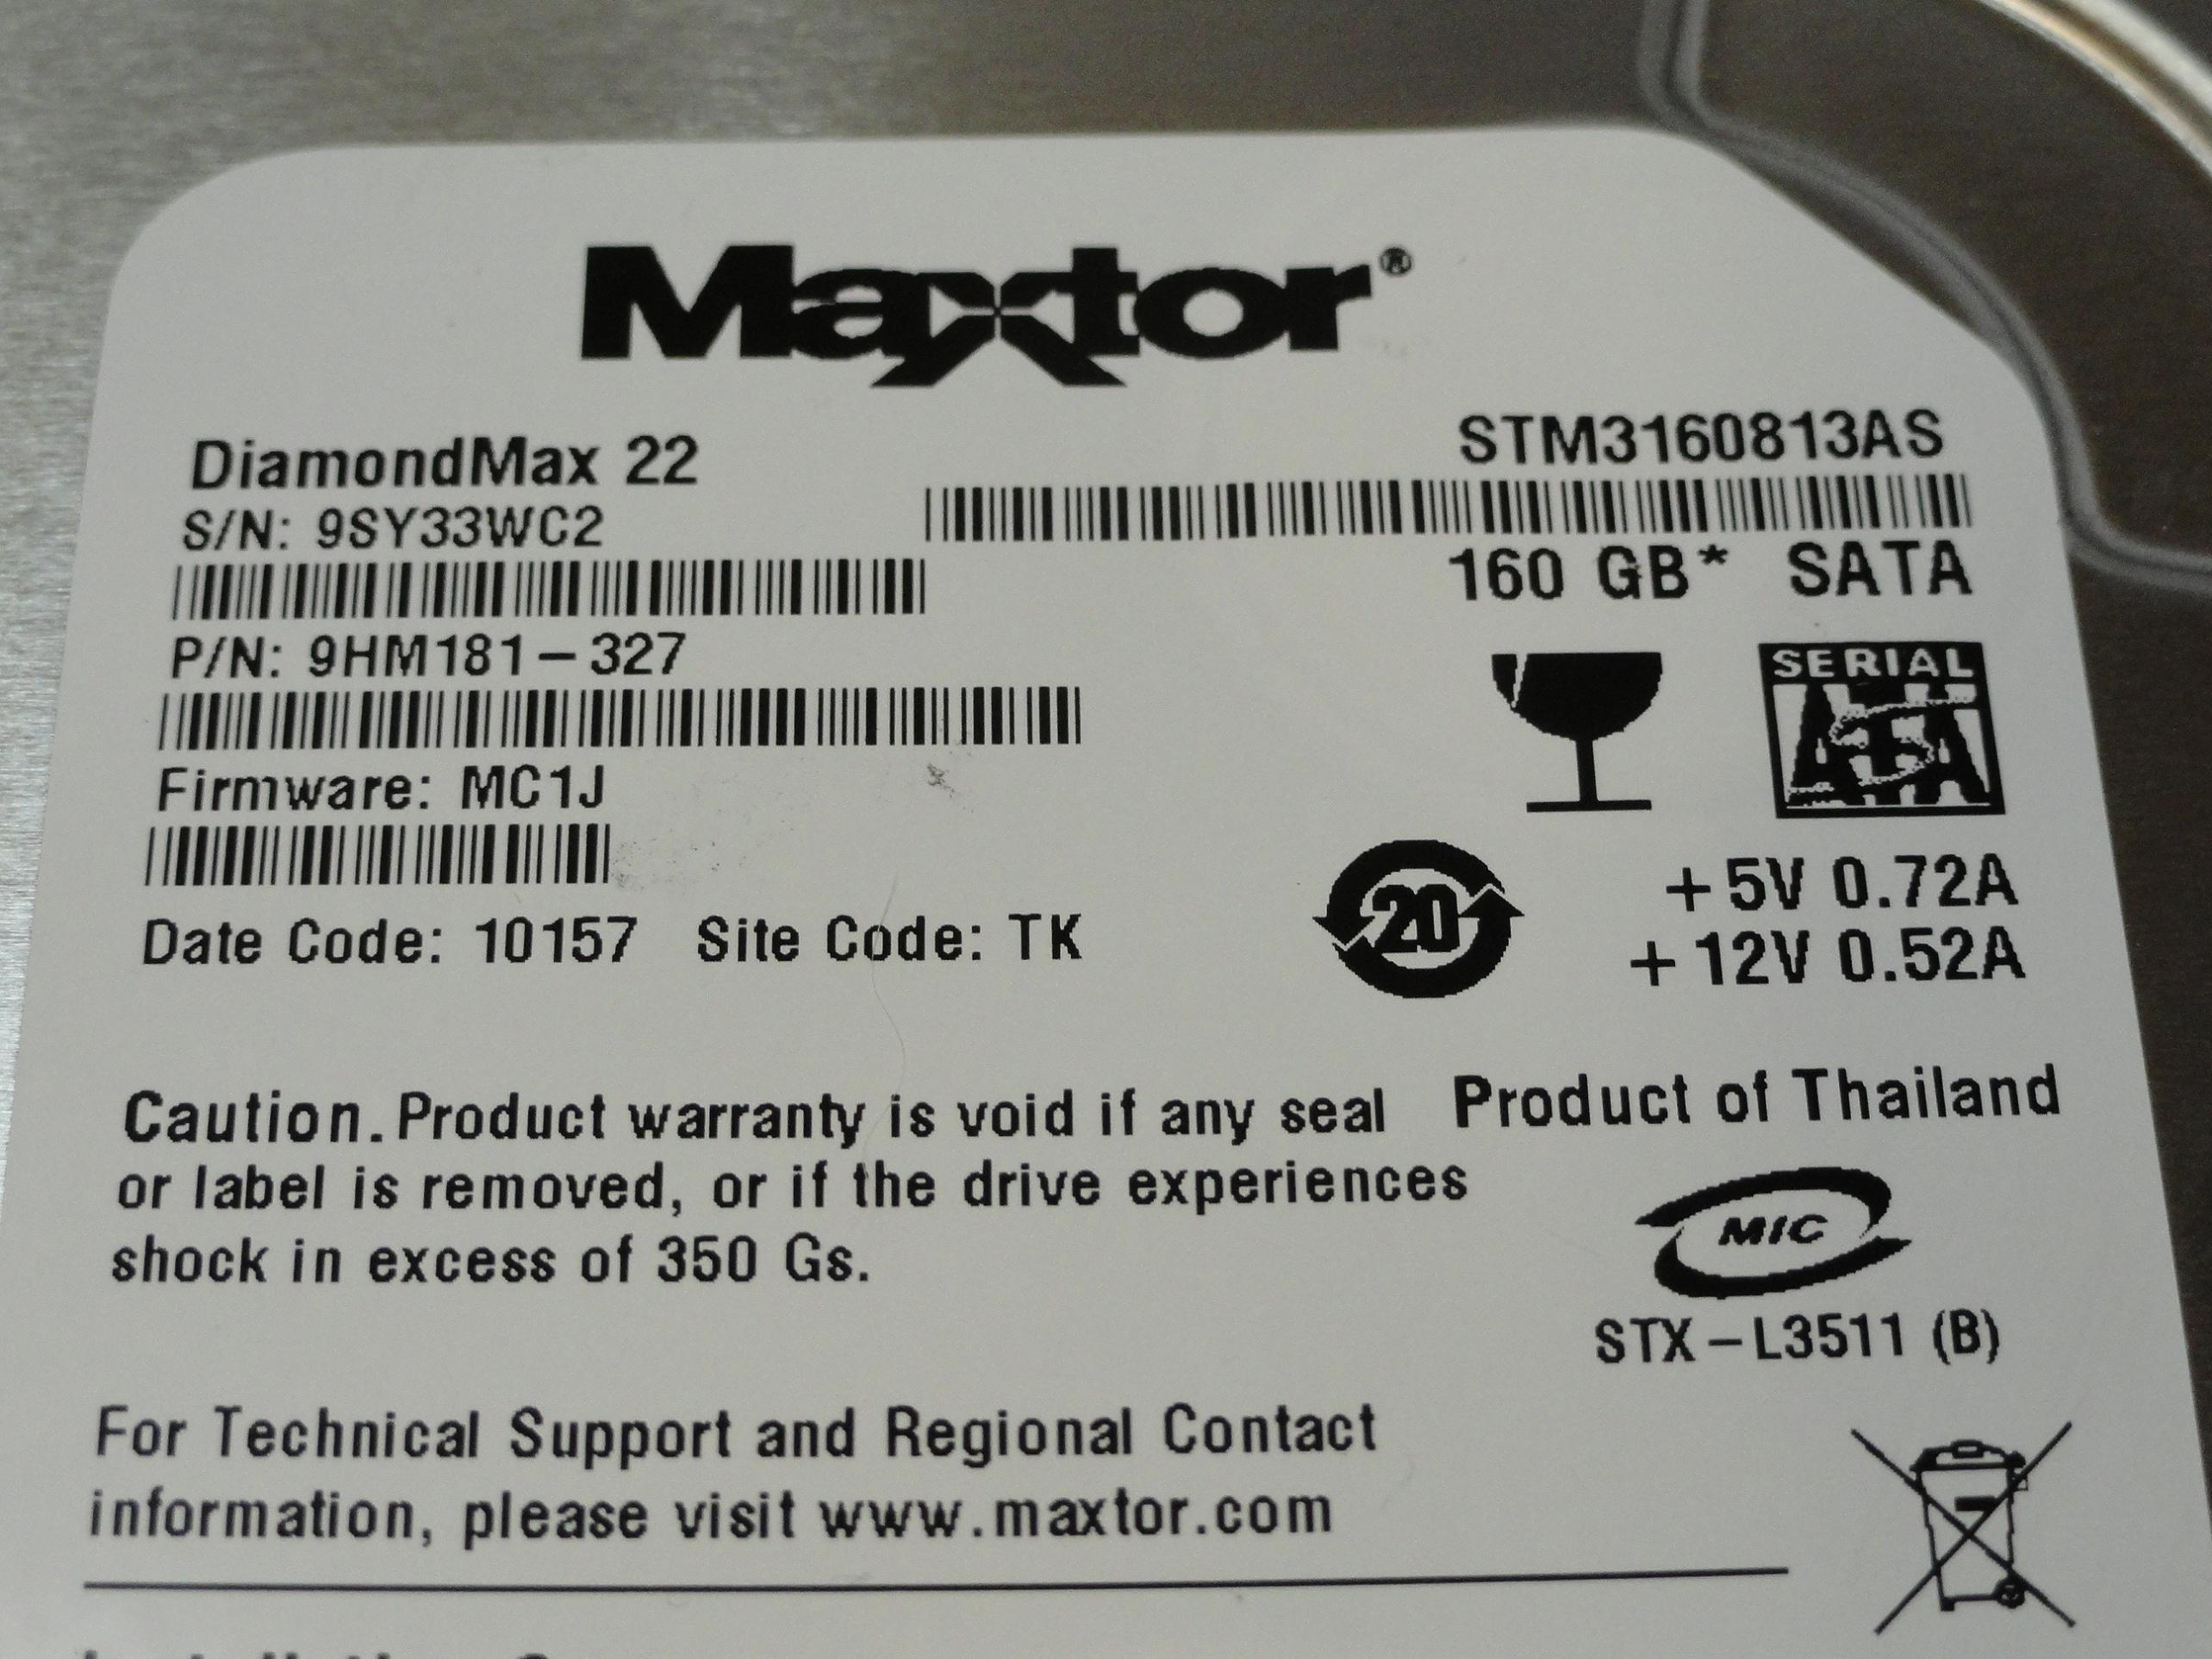 PR19622_9HM181-327_Maxtor 160Gb SATA 7200rpm 3.5in HDD - Image2